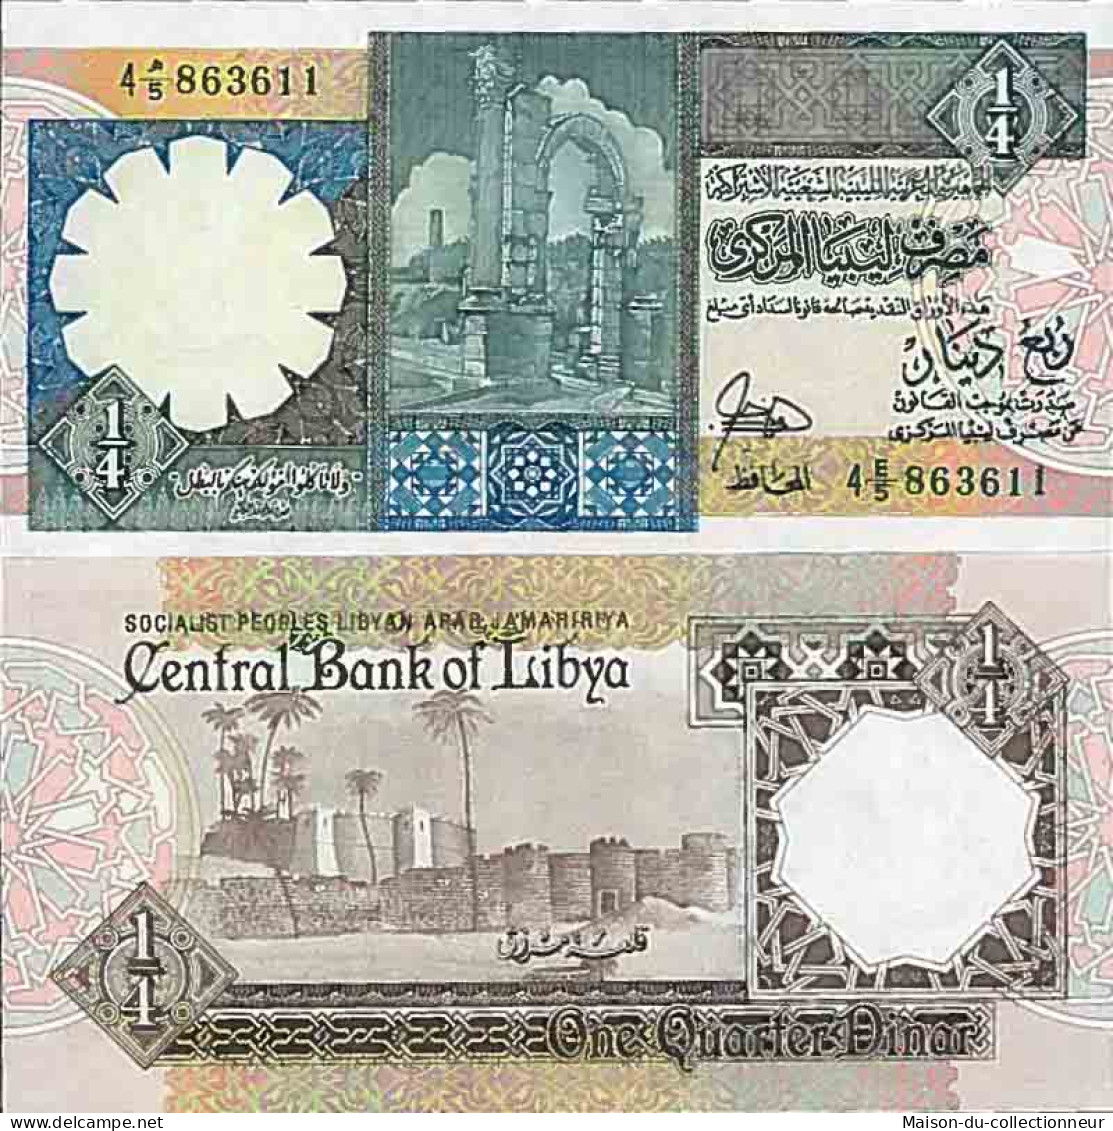 Billet De Banque Collection Libye - PK N° 52 - 1/4 Dinar - Libië